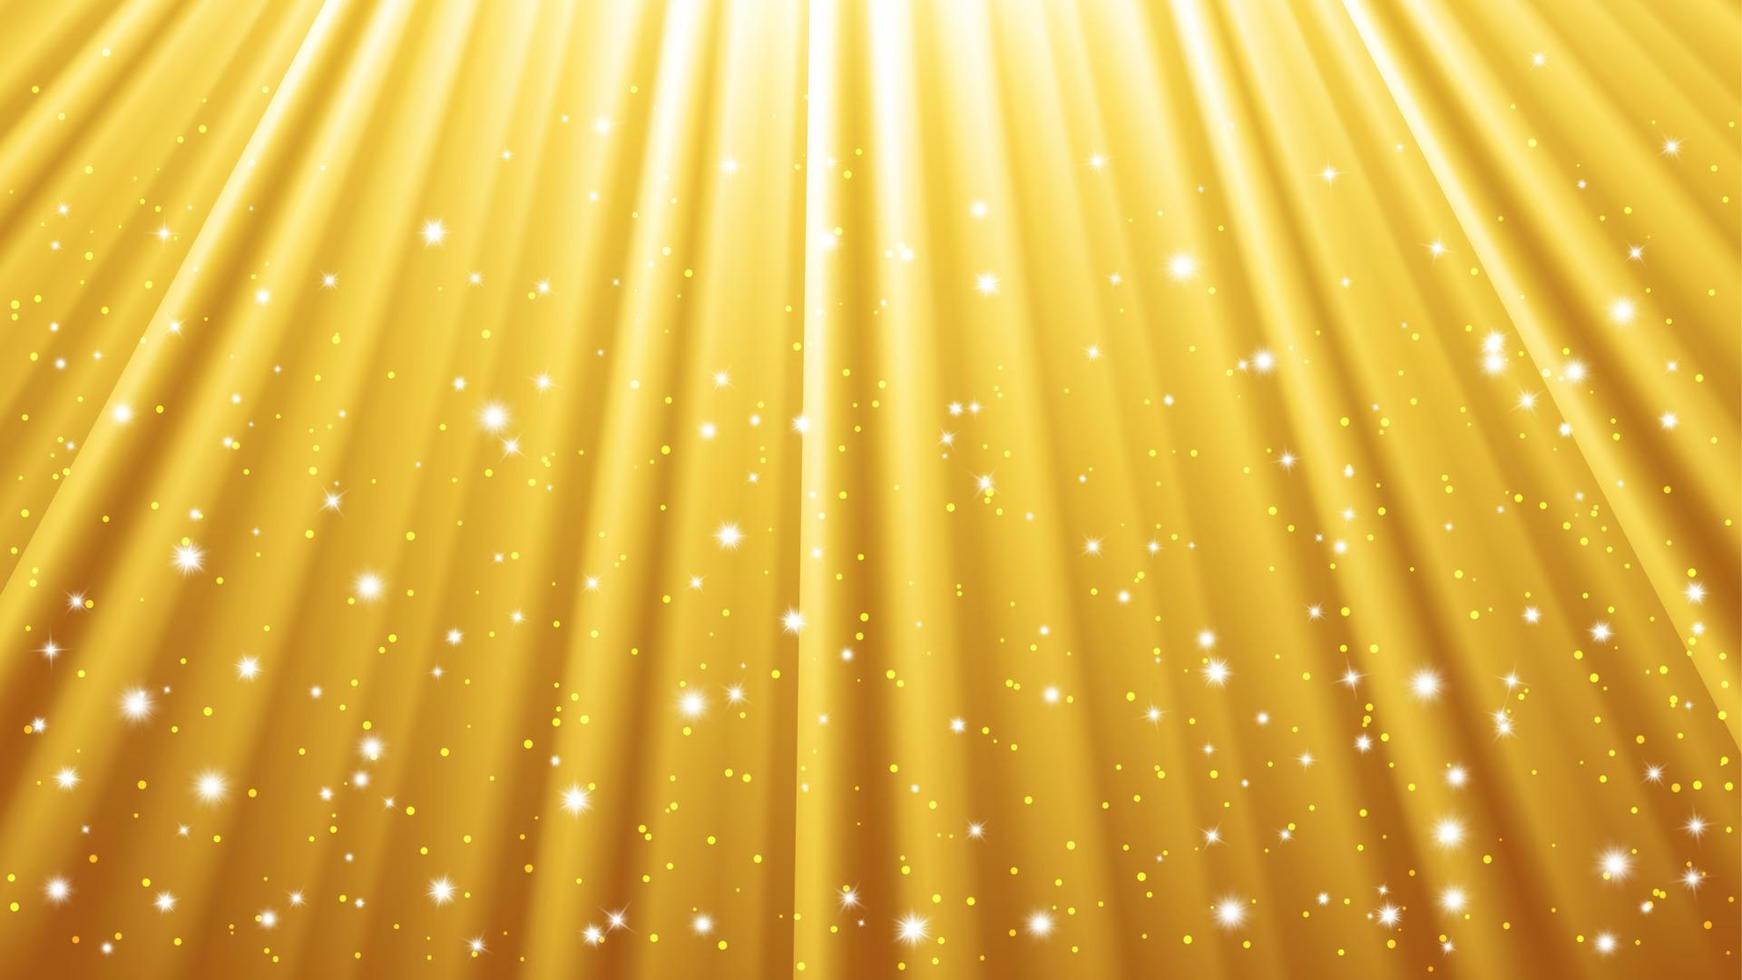 fondo de rayos de luz solar con efectos de luz. telón de fondo amarillo con luz de resplandor. ilustración vectorial vector